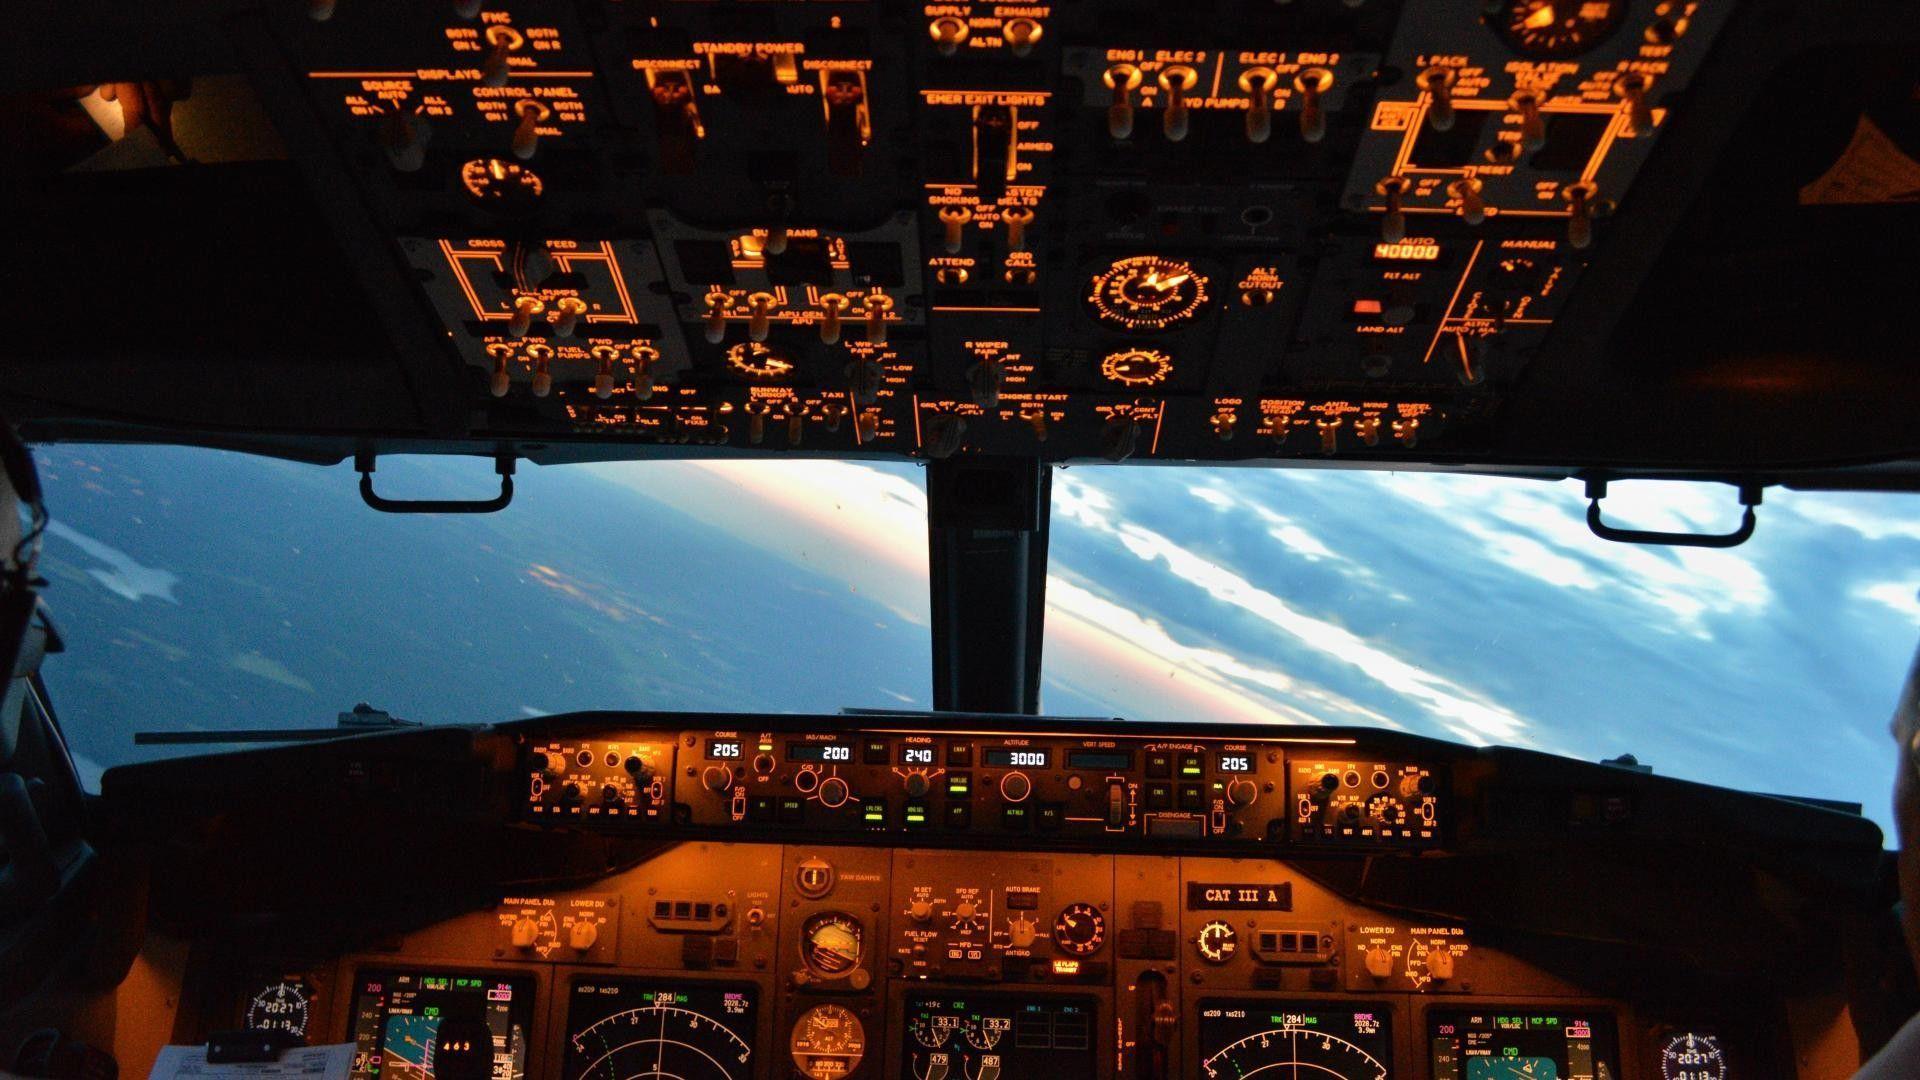 boeing 747 200 cockpit